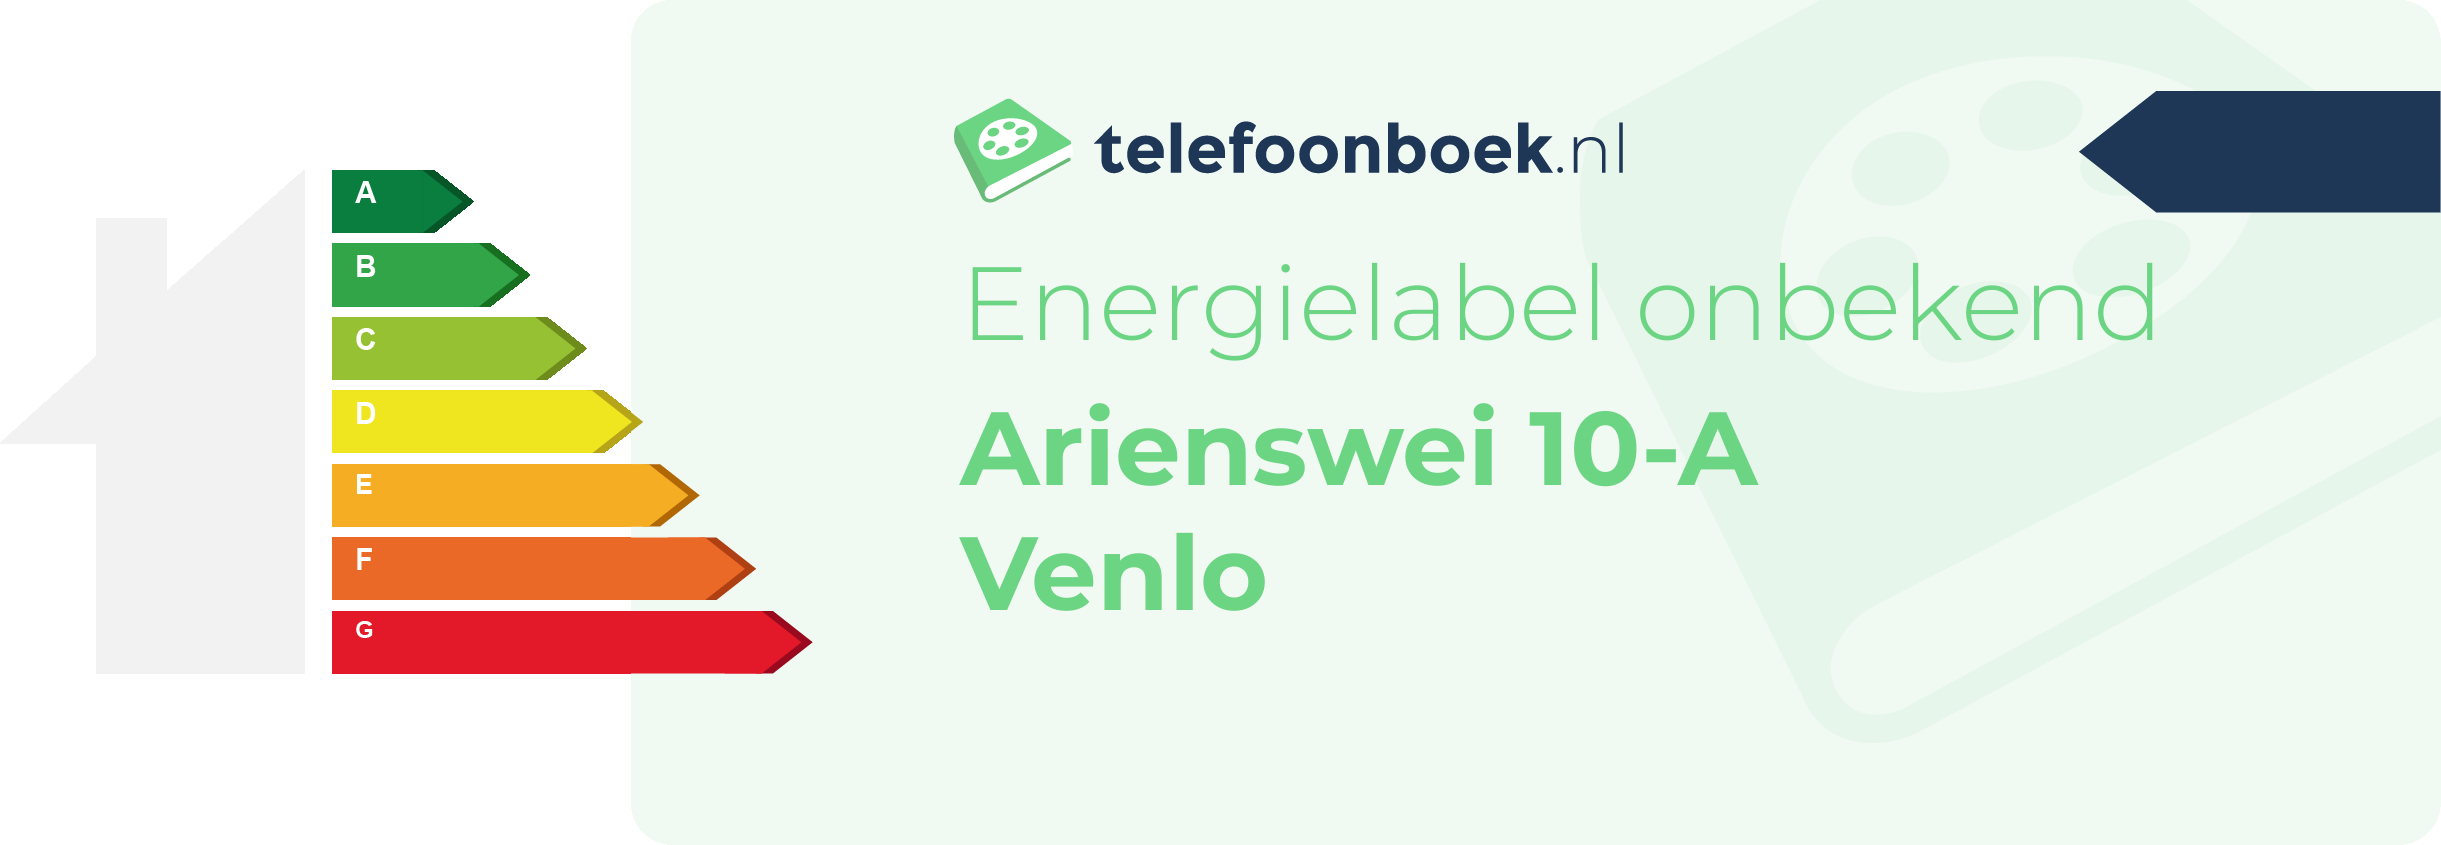 Energielabel Arienswei 10-A Venlo